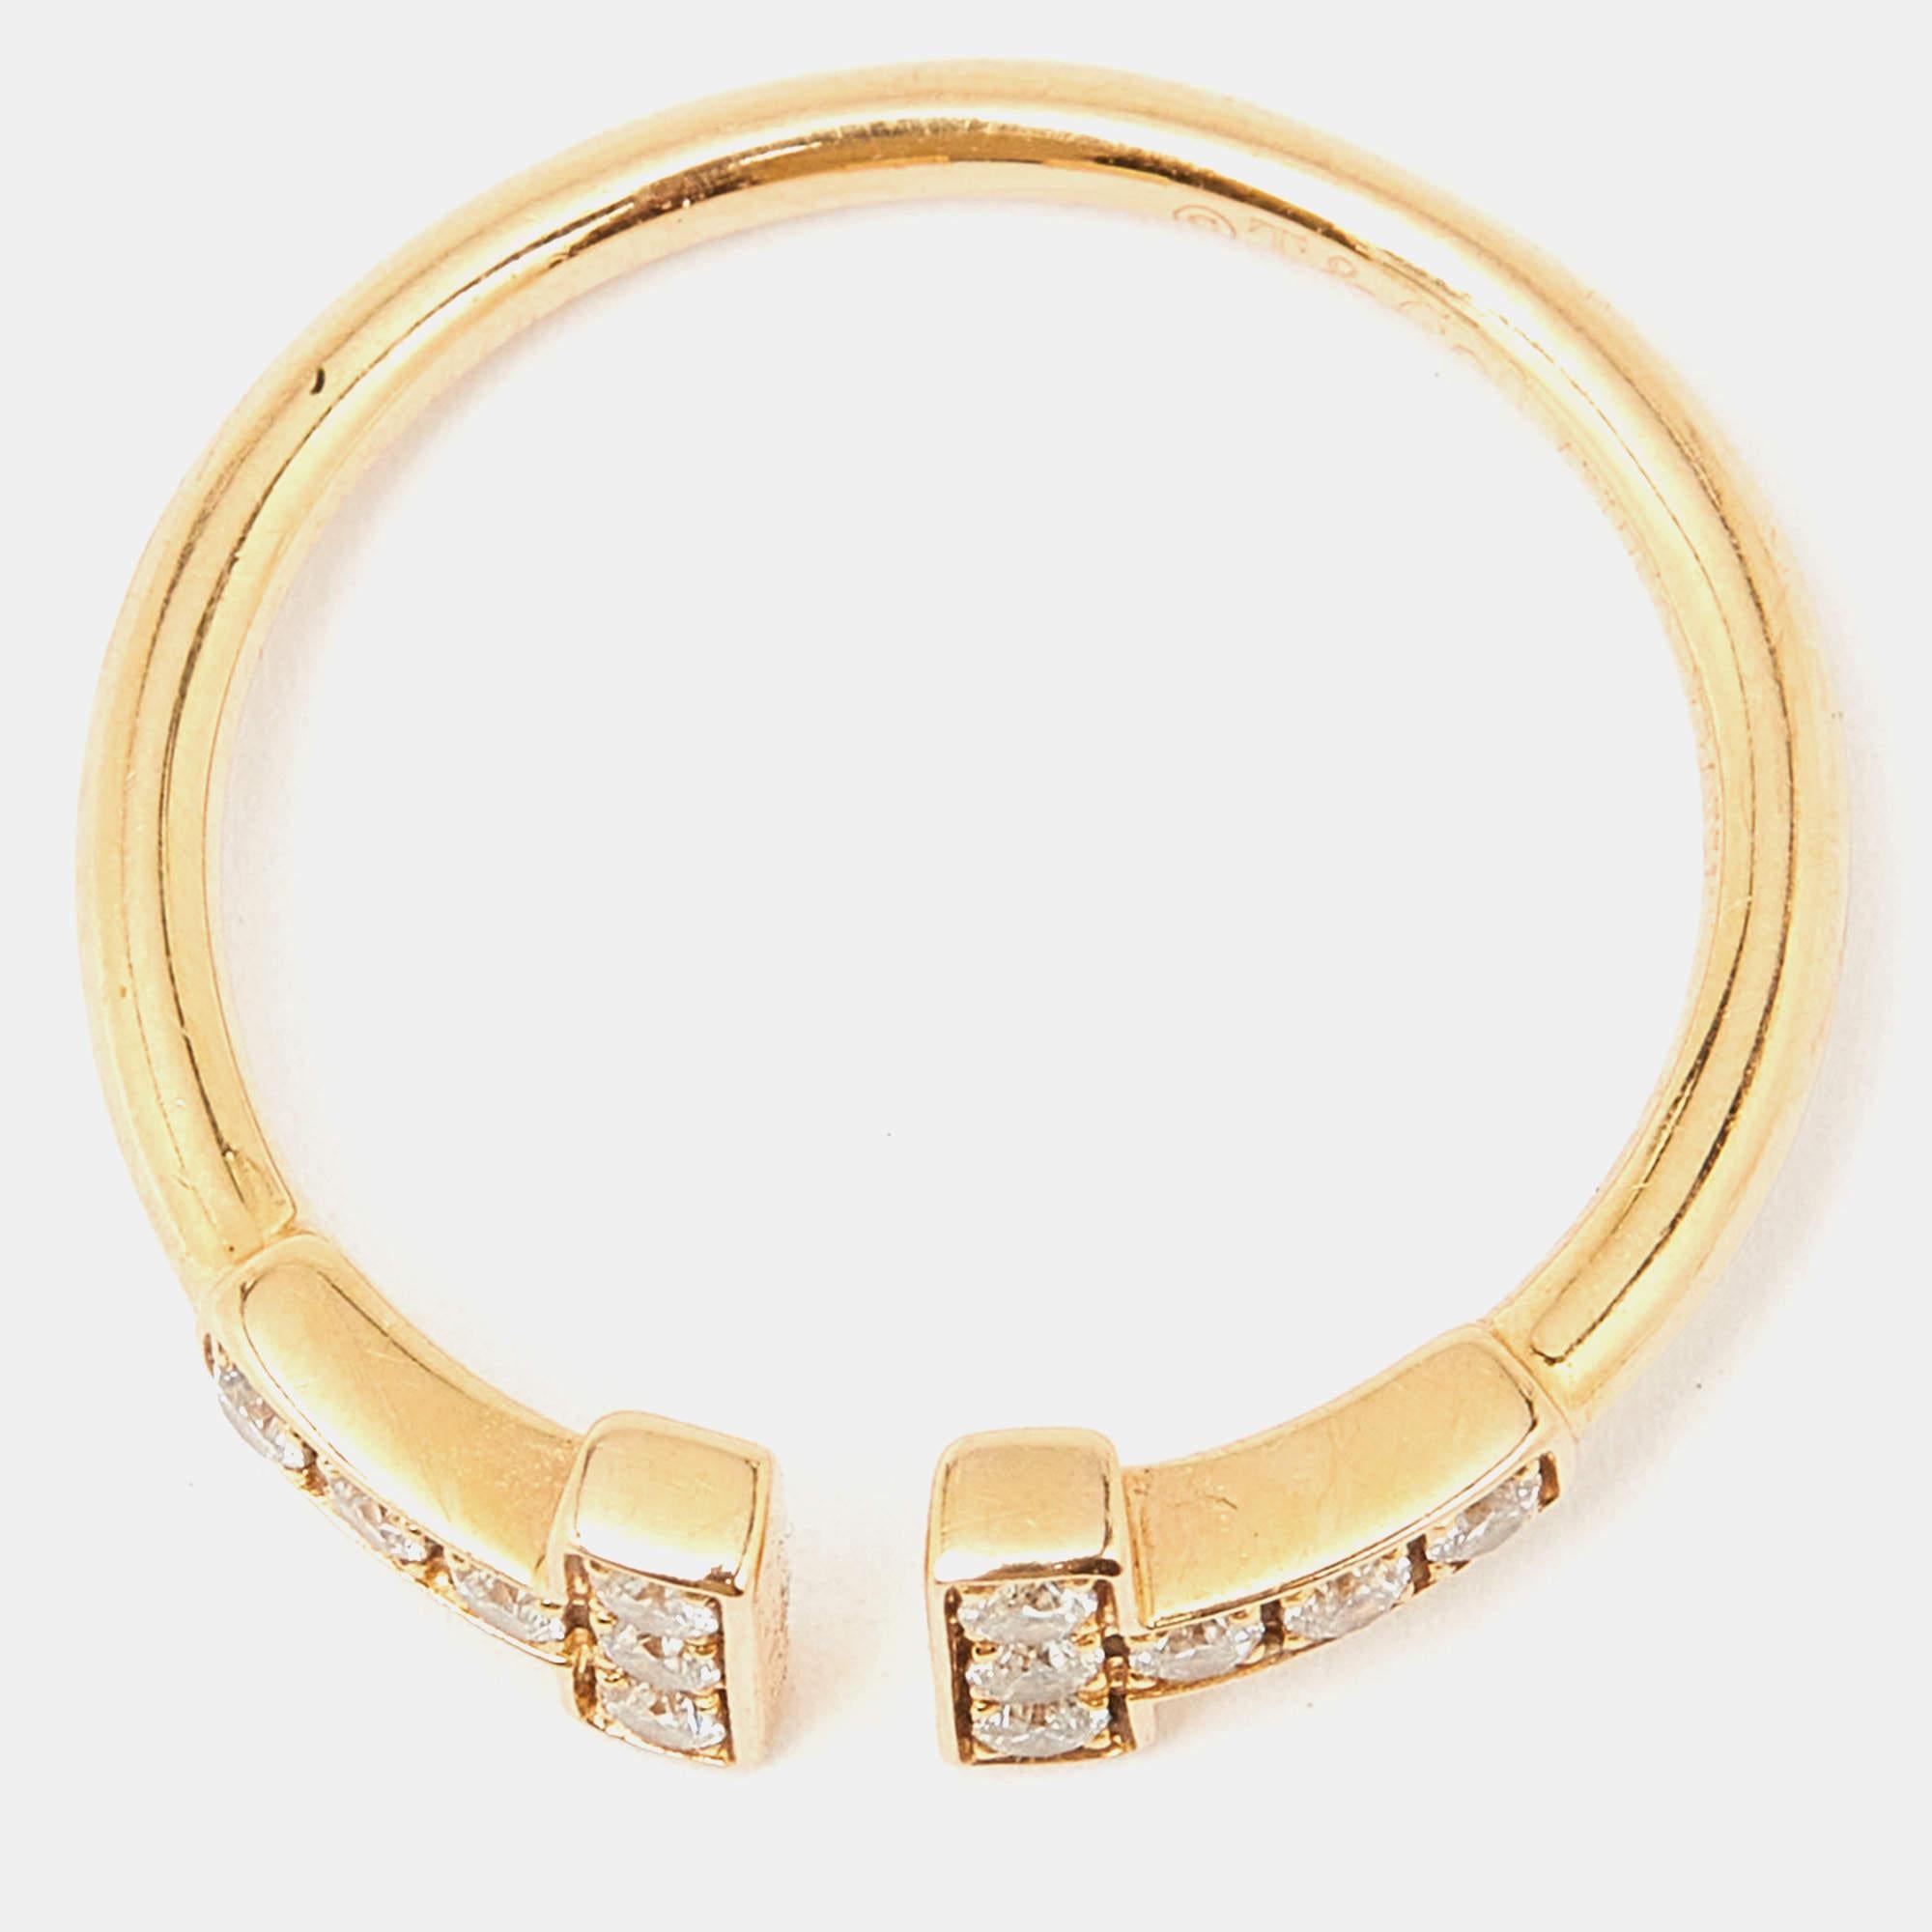 Tiffany & Co. Twire Diamonds 18k Yellow Gold Ring Size 50 In Good Condition For Sale In Dubai, Al Qouz 2